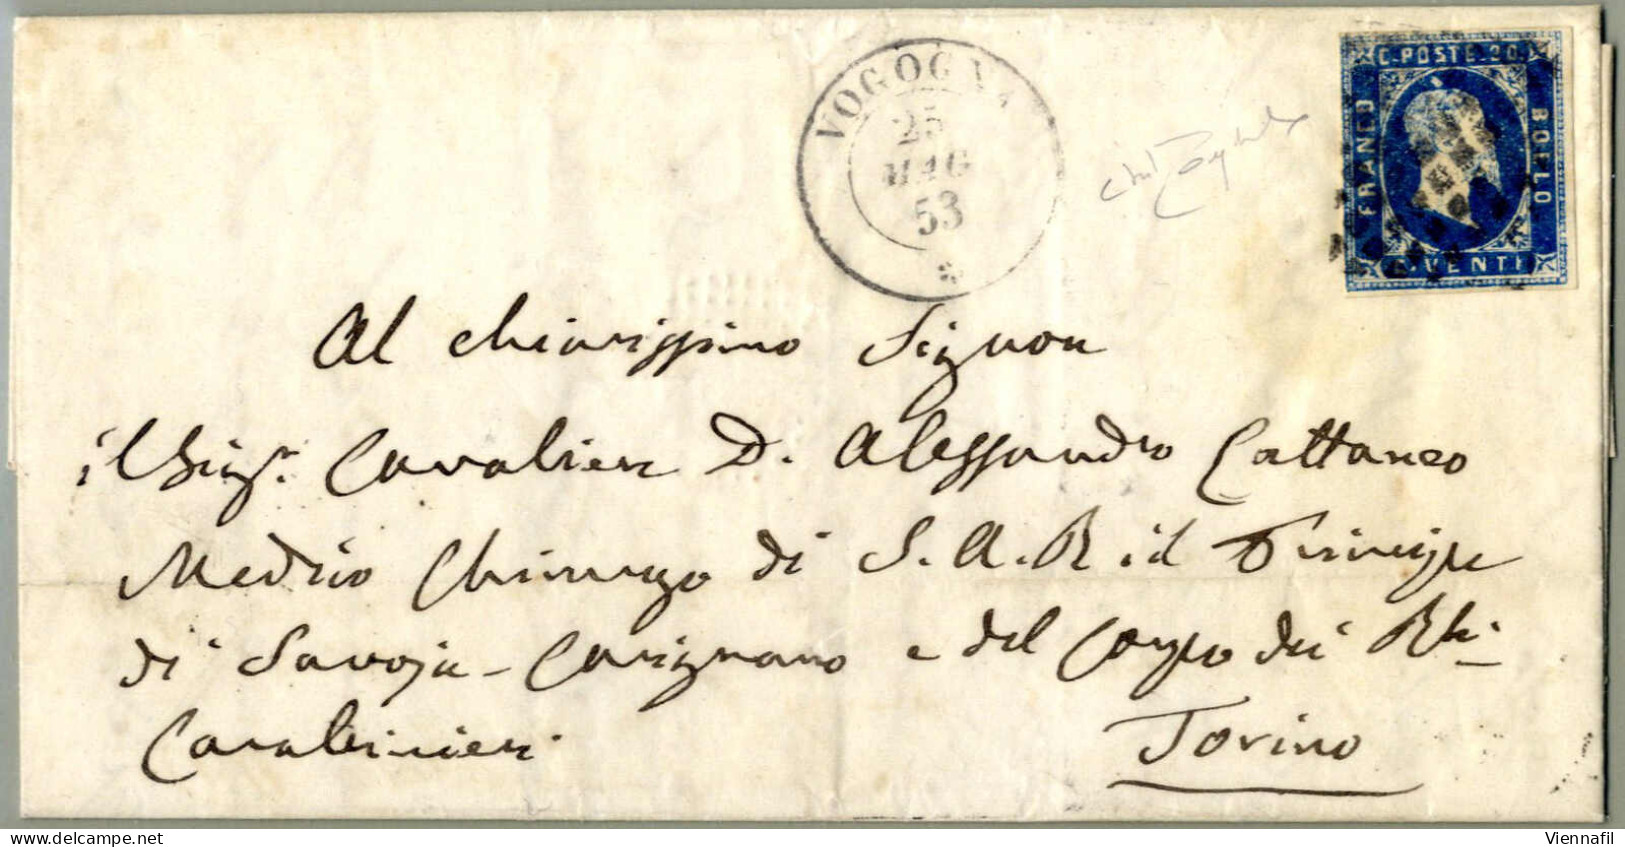 cover Sardegna 1854/58, lotto di 11 buste con annullamenti del Piemonte, due buste con Sass. 2 da Vogogna (punti 13) e C